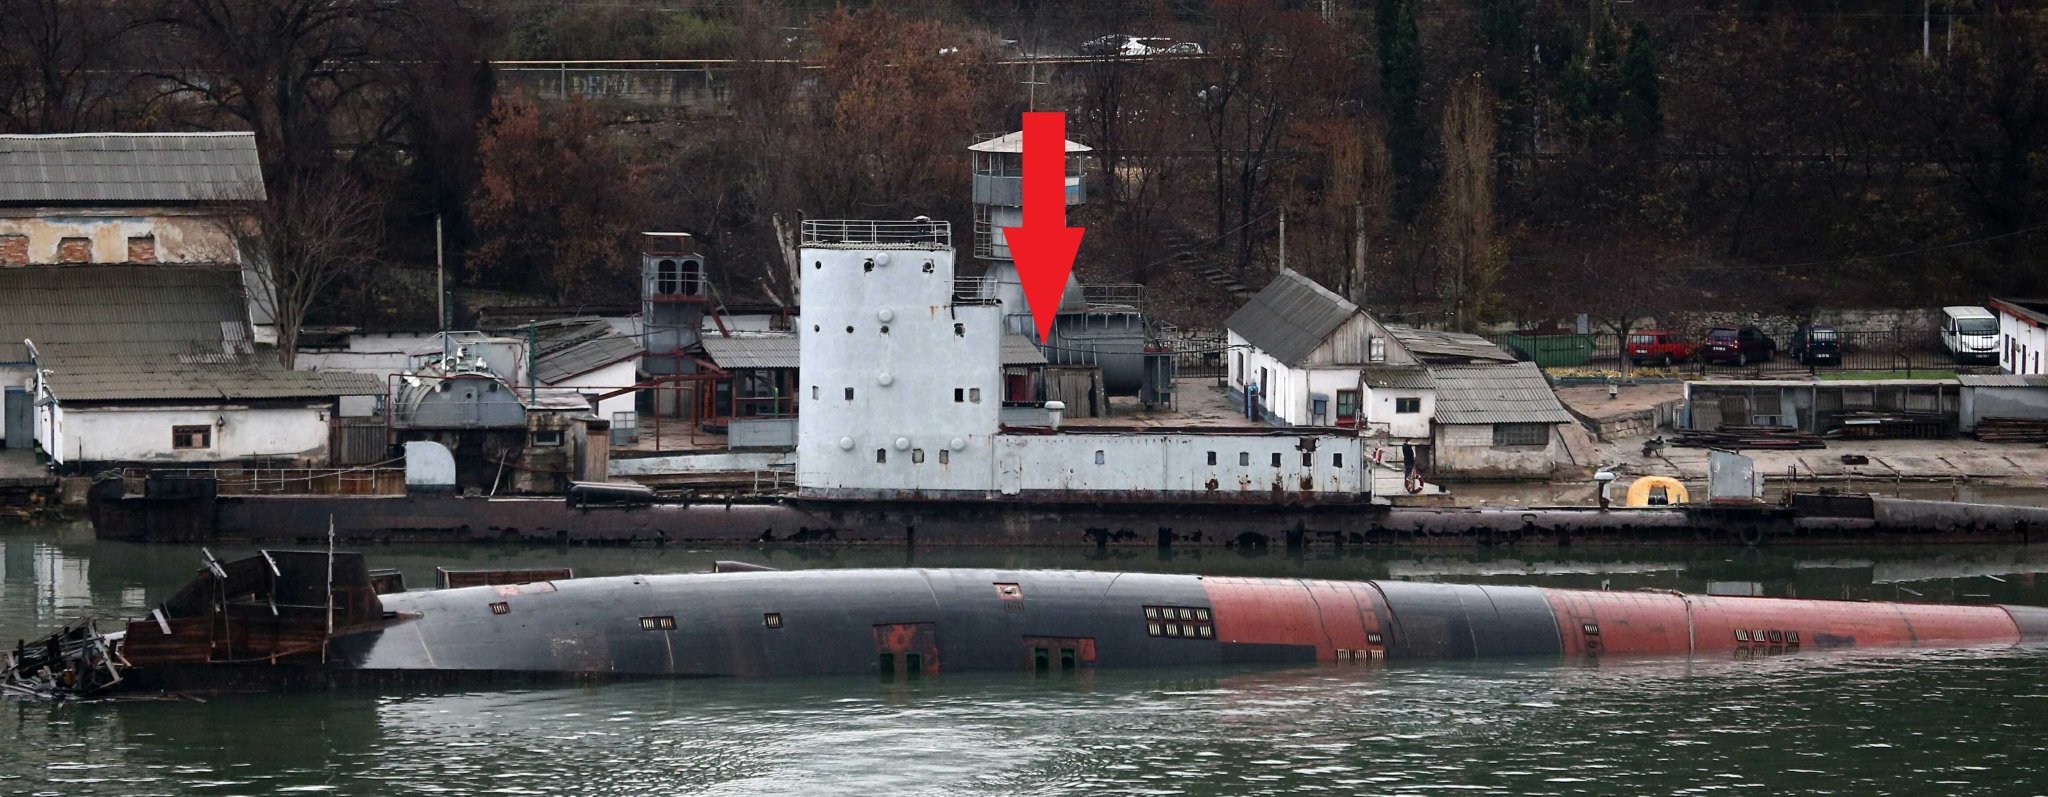 Пд 16. Подводная лодка УТС-247 Севастополь. Севастополь затонул плавдок.